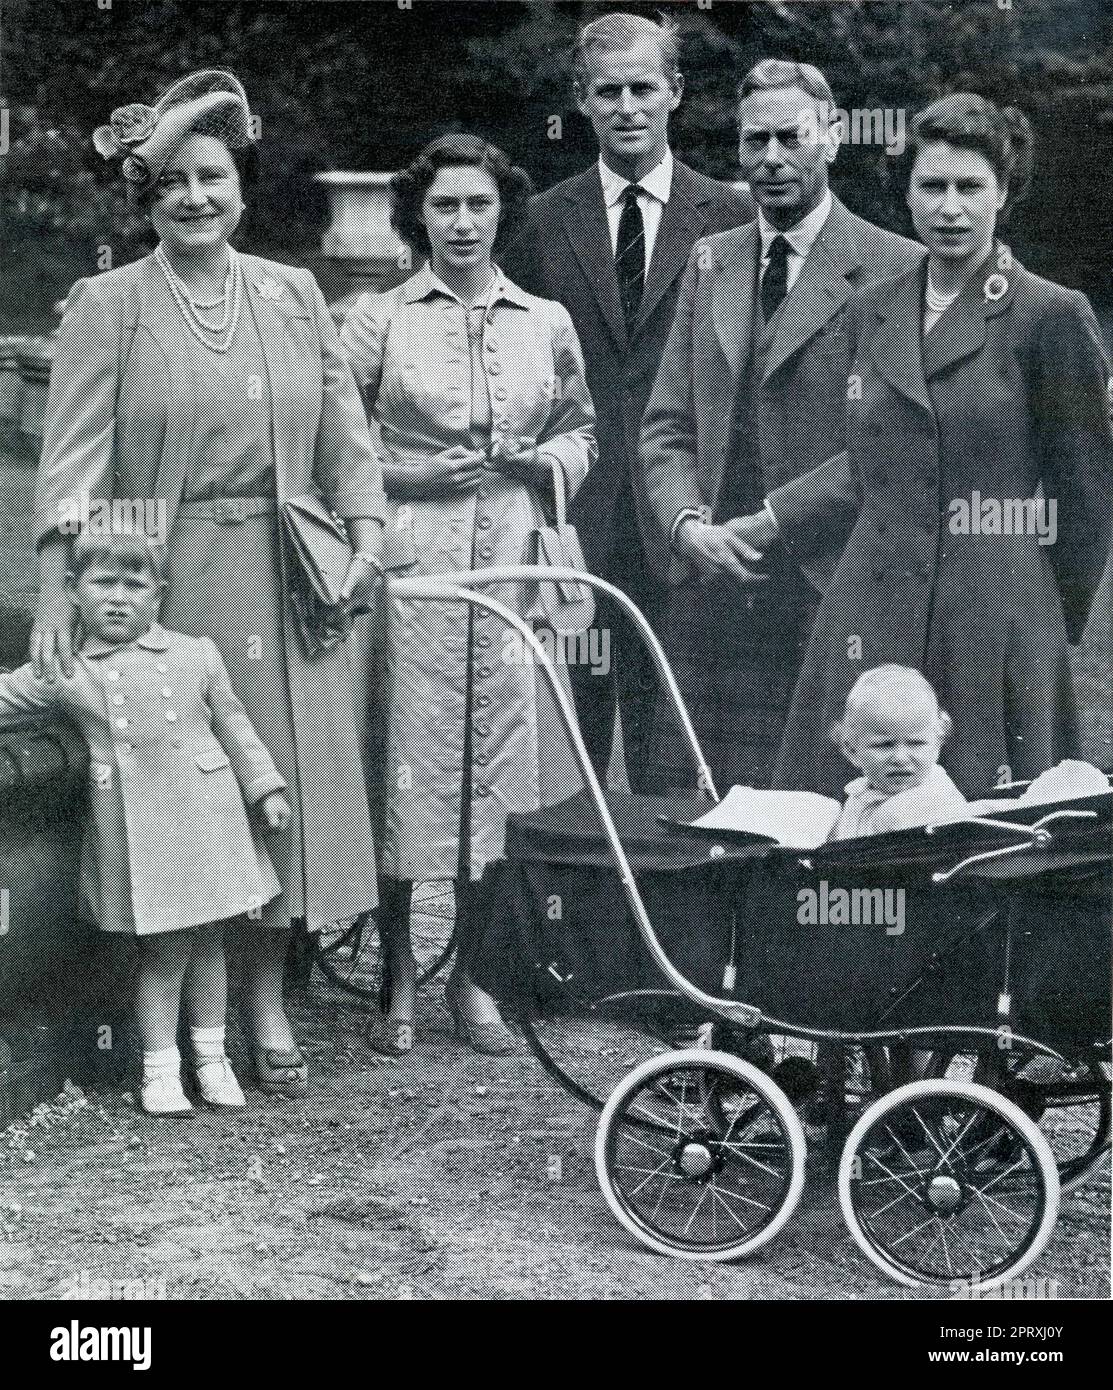 Photo de presse de 1951 - séance photo informelle de la famille royale lors d'une visite familiale au château de Balmoral : de gauche à droite la reine Elizabeth (mère de la Reine Elizabeth II née Elizabeth Bowes-Lyon ) la princesse Margaret, le prince Philip, duc d'Édimbourg, le roi George VI (1895 - 1952), Et la princesse Elizabeth avec ses enfants le prince Charles (3 ans) (à gauche) - futur héritier du trône, avec sa sœur, la princesse Anne (1 ans). Cette photo marquait l'anniversaire de la princesse Margaret le 21st août 21st et celui de la princesse Anne le 15th août. Banque D'Images